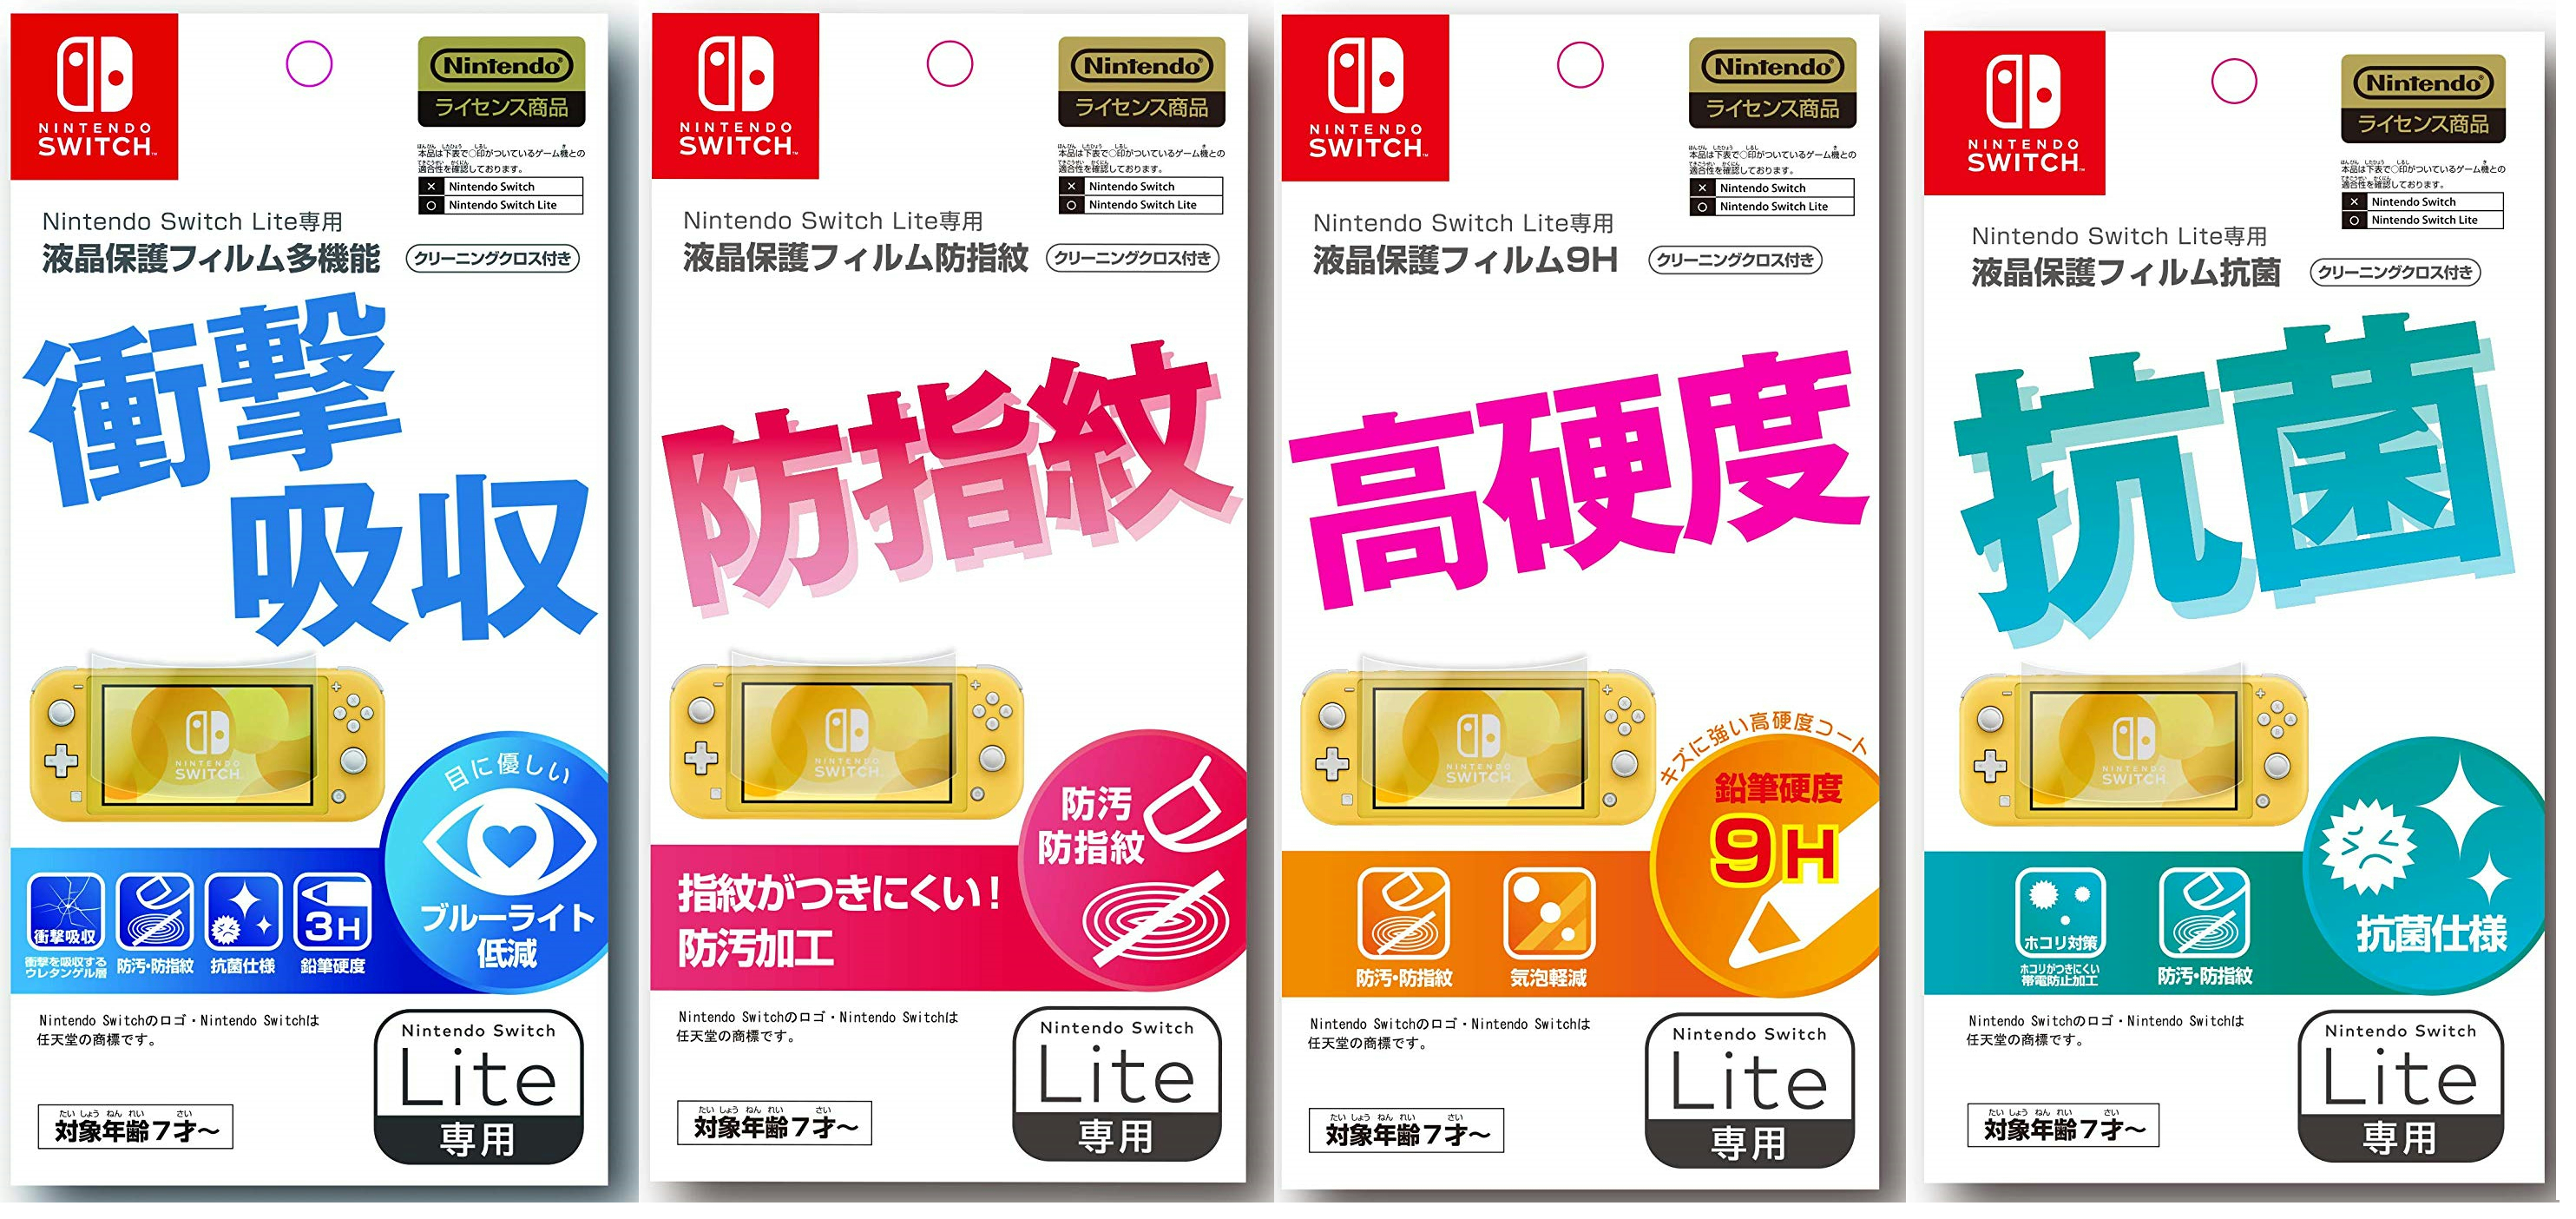 マックスゲームズから「Nintendo Switch Lite」用のアクセサリーが2019 